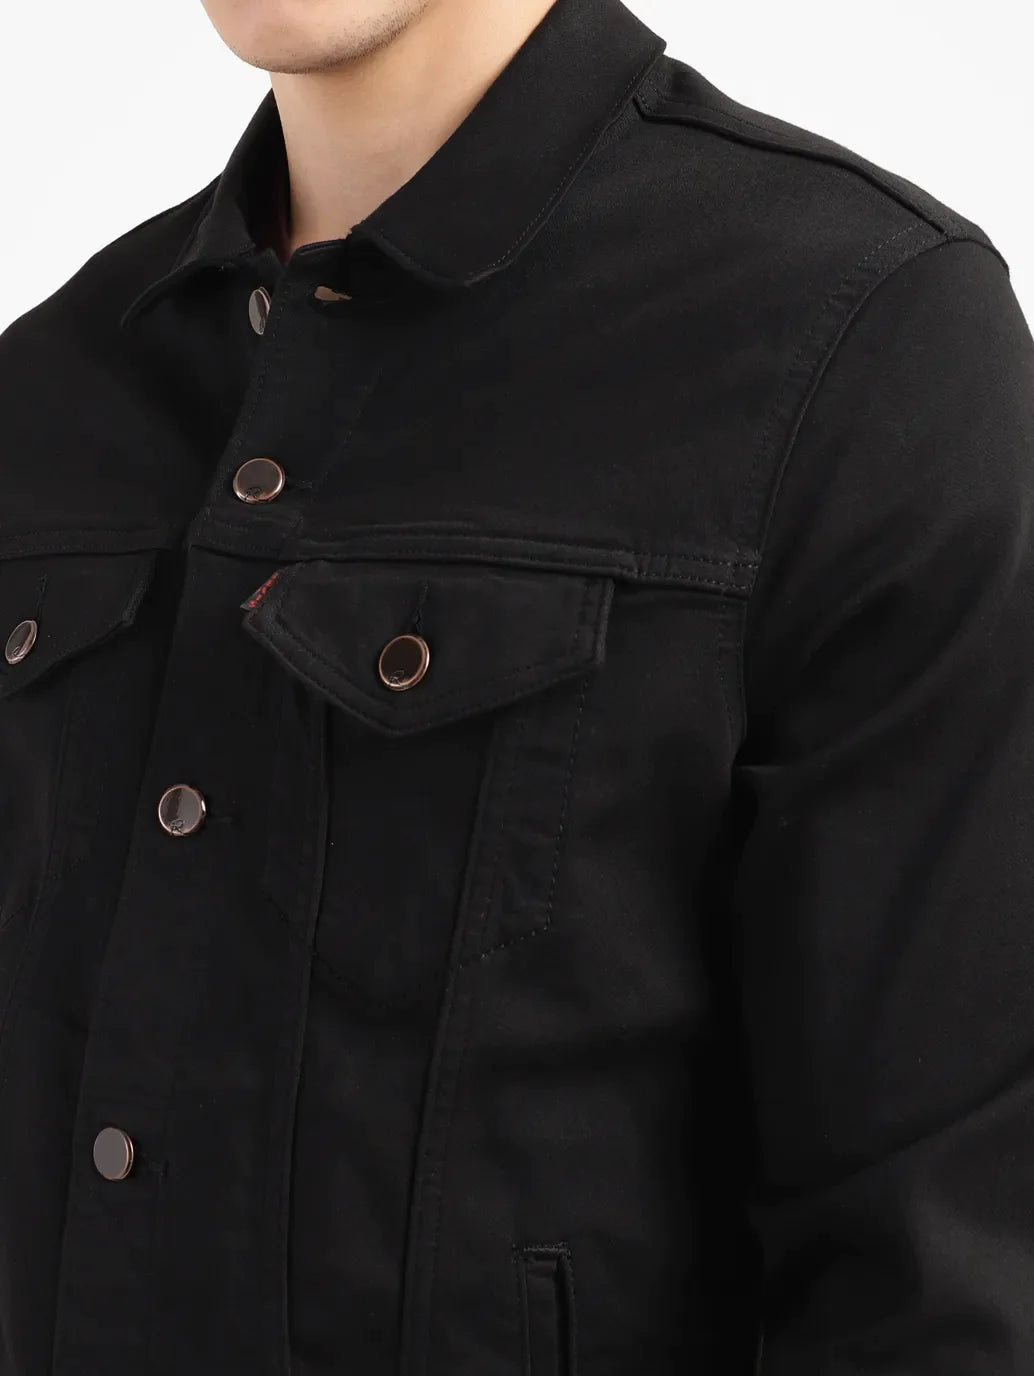 Men's Solid Black Spread Collar Jacket